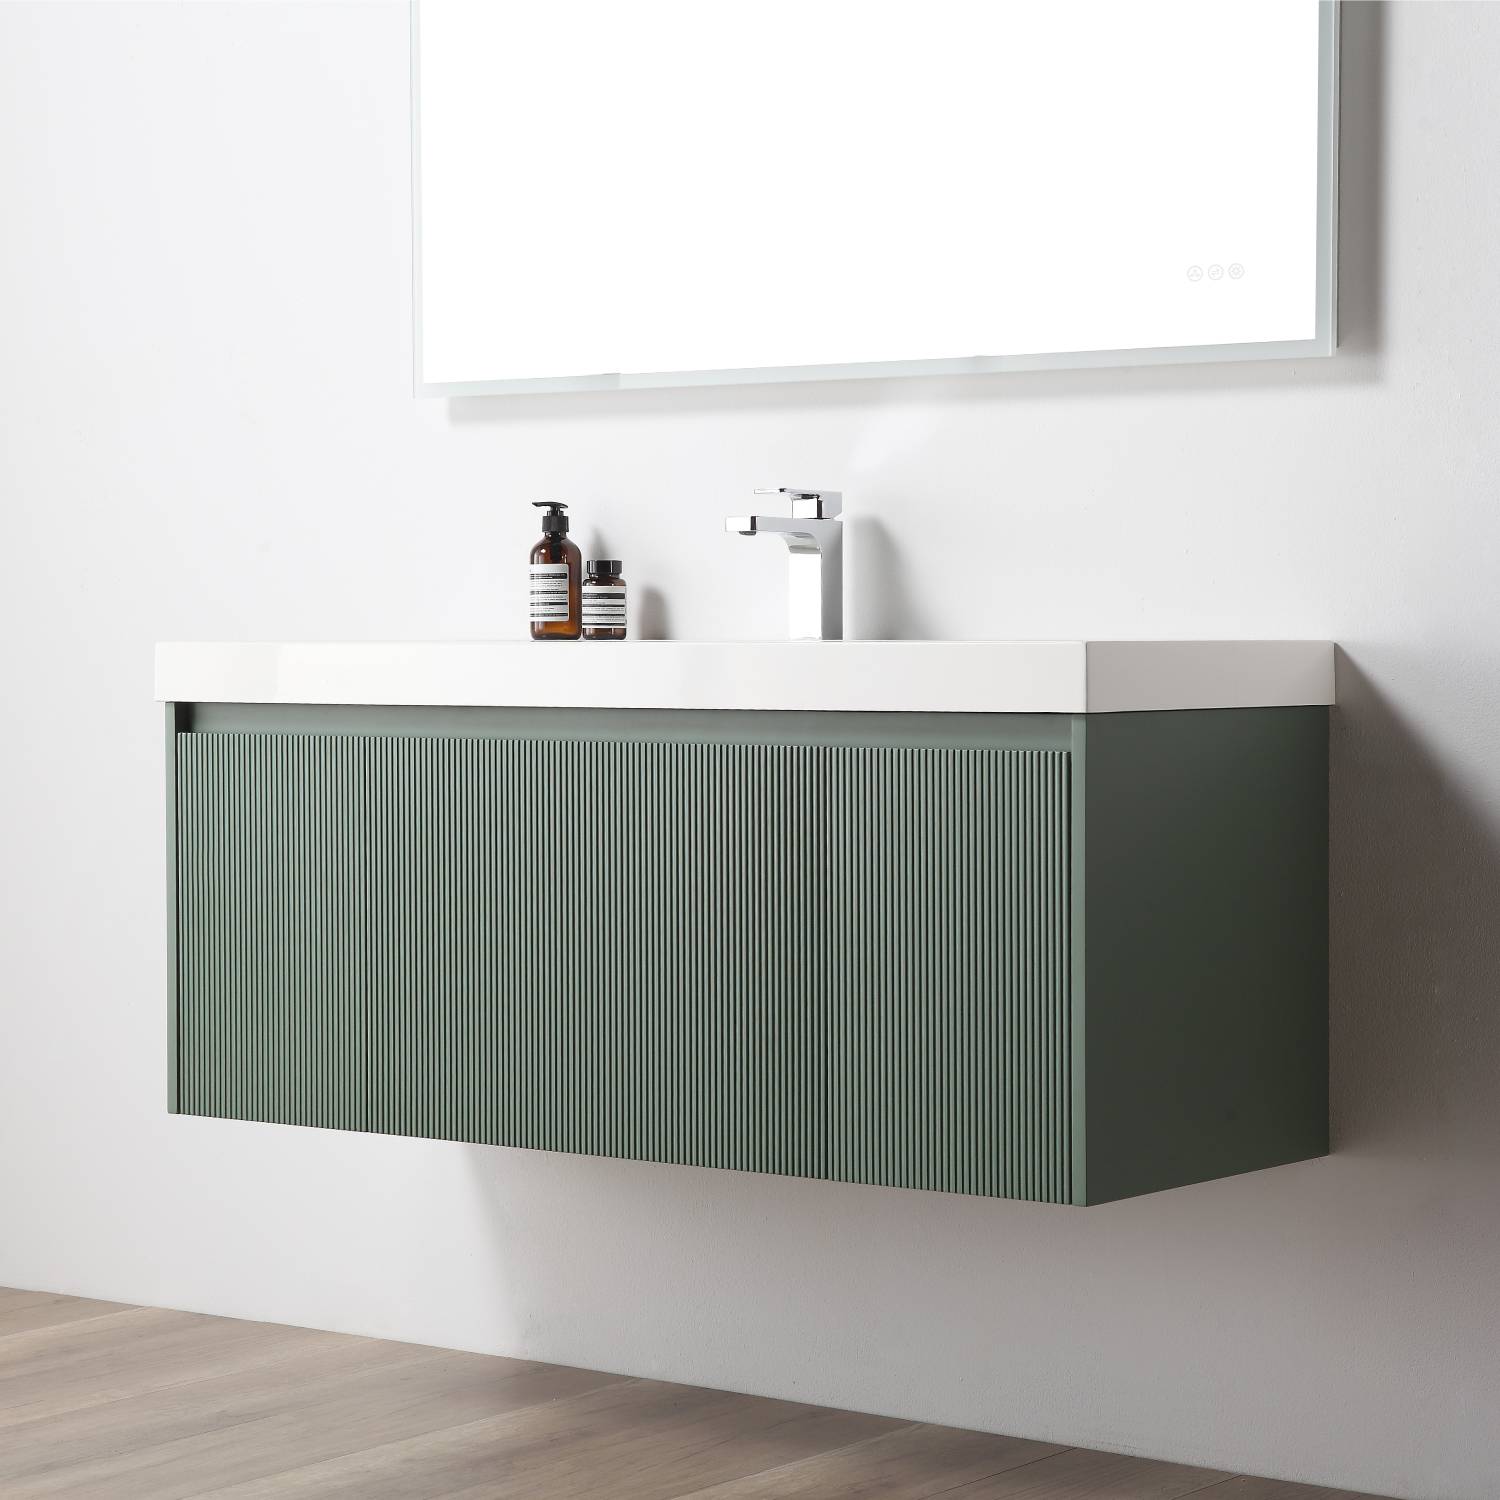 Positano 48" Luxury Single Bathroom Vanity with Acrylic Sink